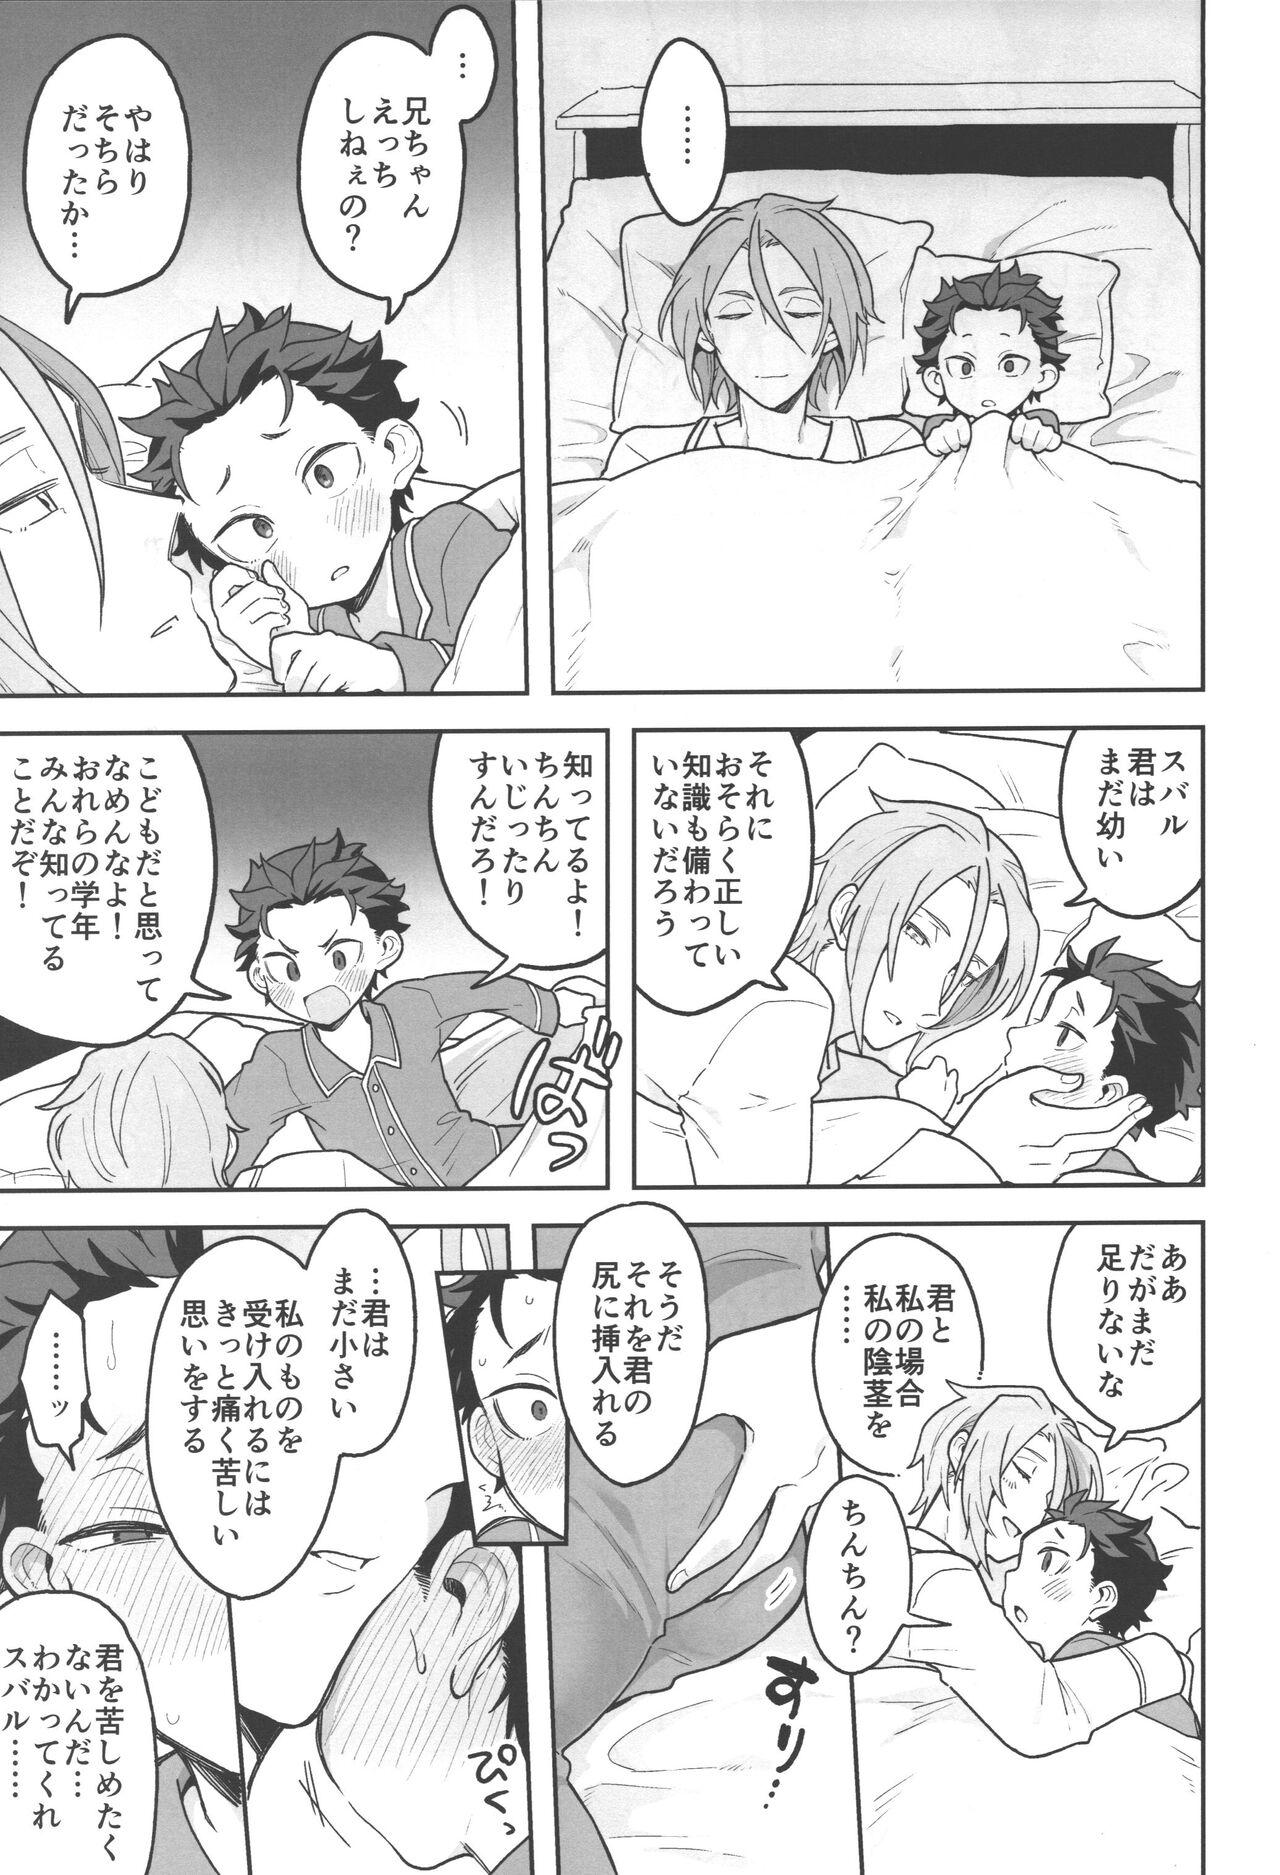 Consolo Julius Nii-chan to Issho - Re zero kara hajimeru isekai seikatsu Good - Page 8